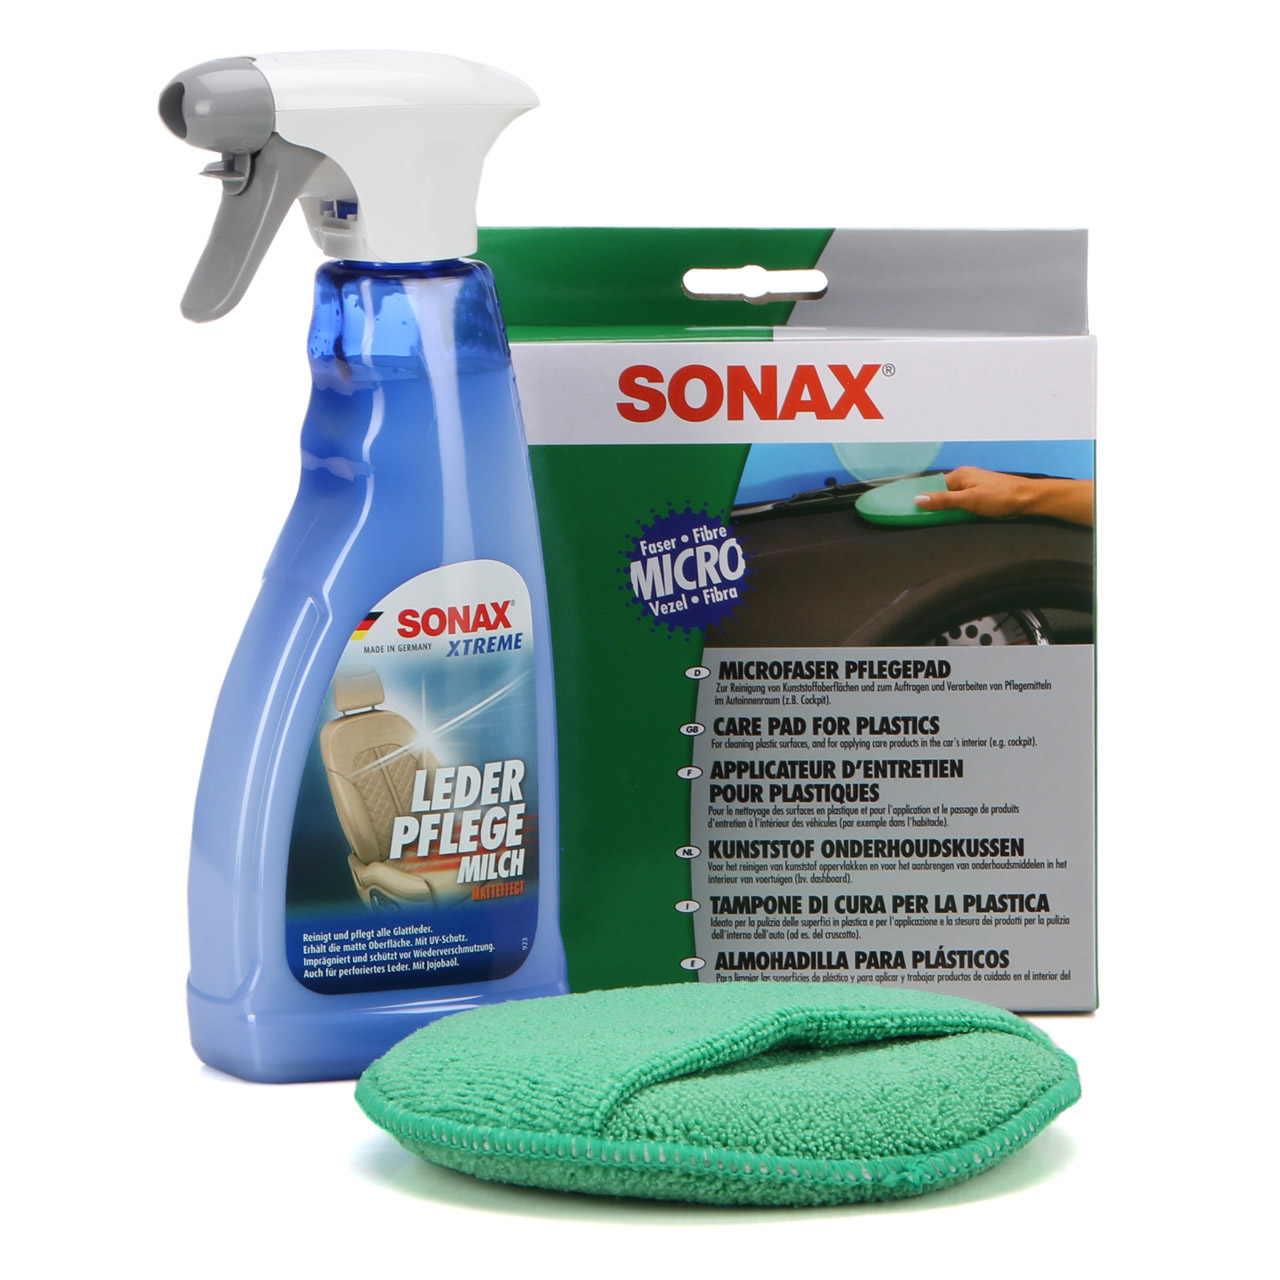 SONAX Xtreme Lederpflegemilch Lederpflege 500ml + SONAX Microfaser PflegePad